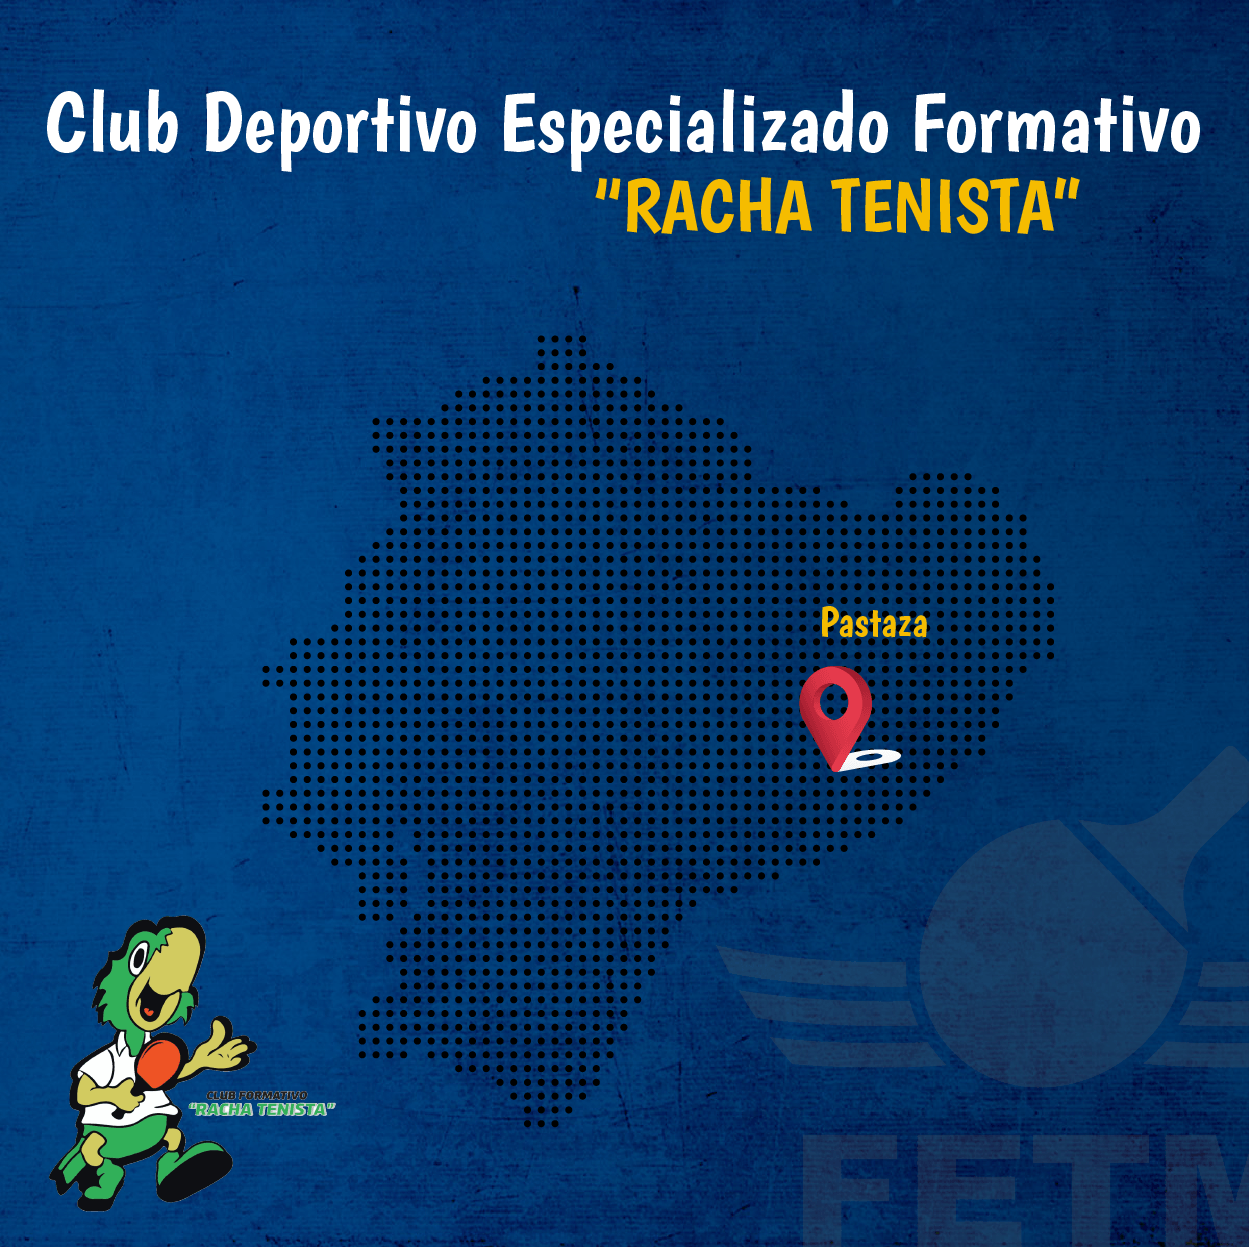 CLUB DEPORTIVO FORMATIVO ESPECIALIZADO DE TENIS DE MESA “RACHA TENISTA”